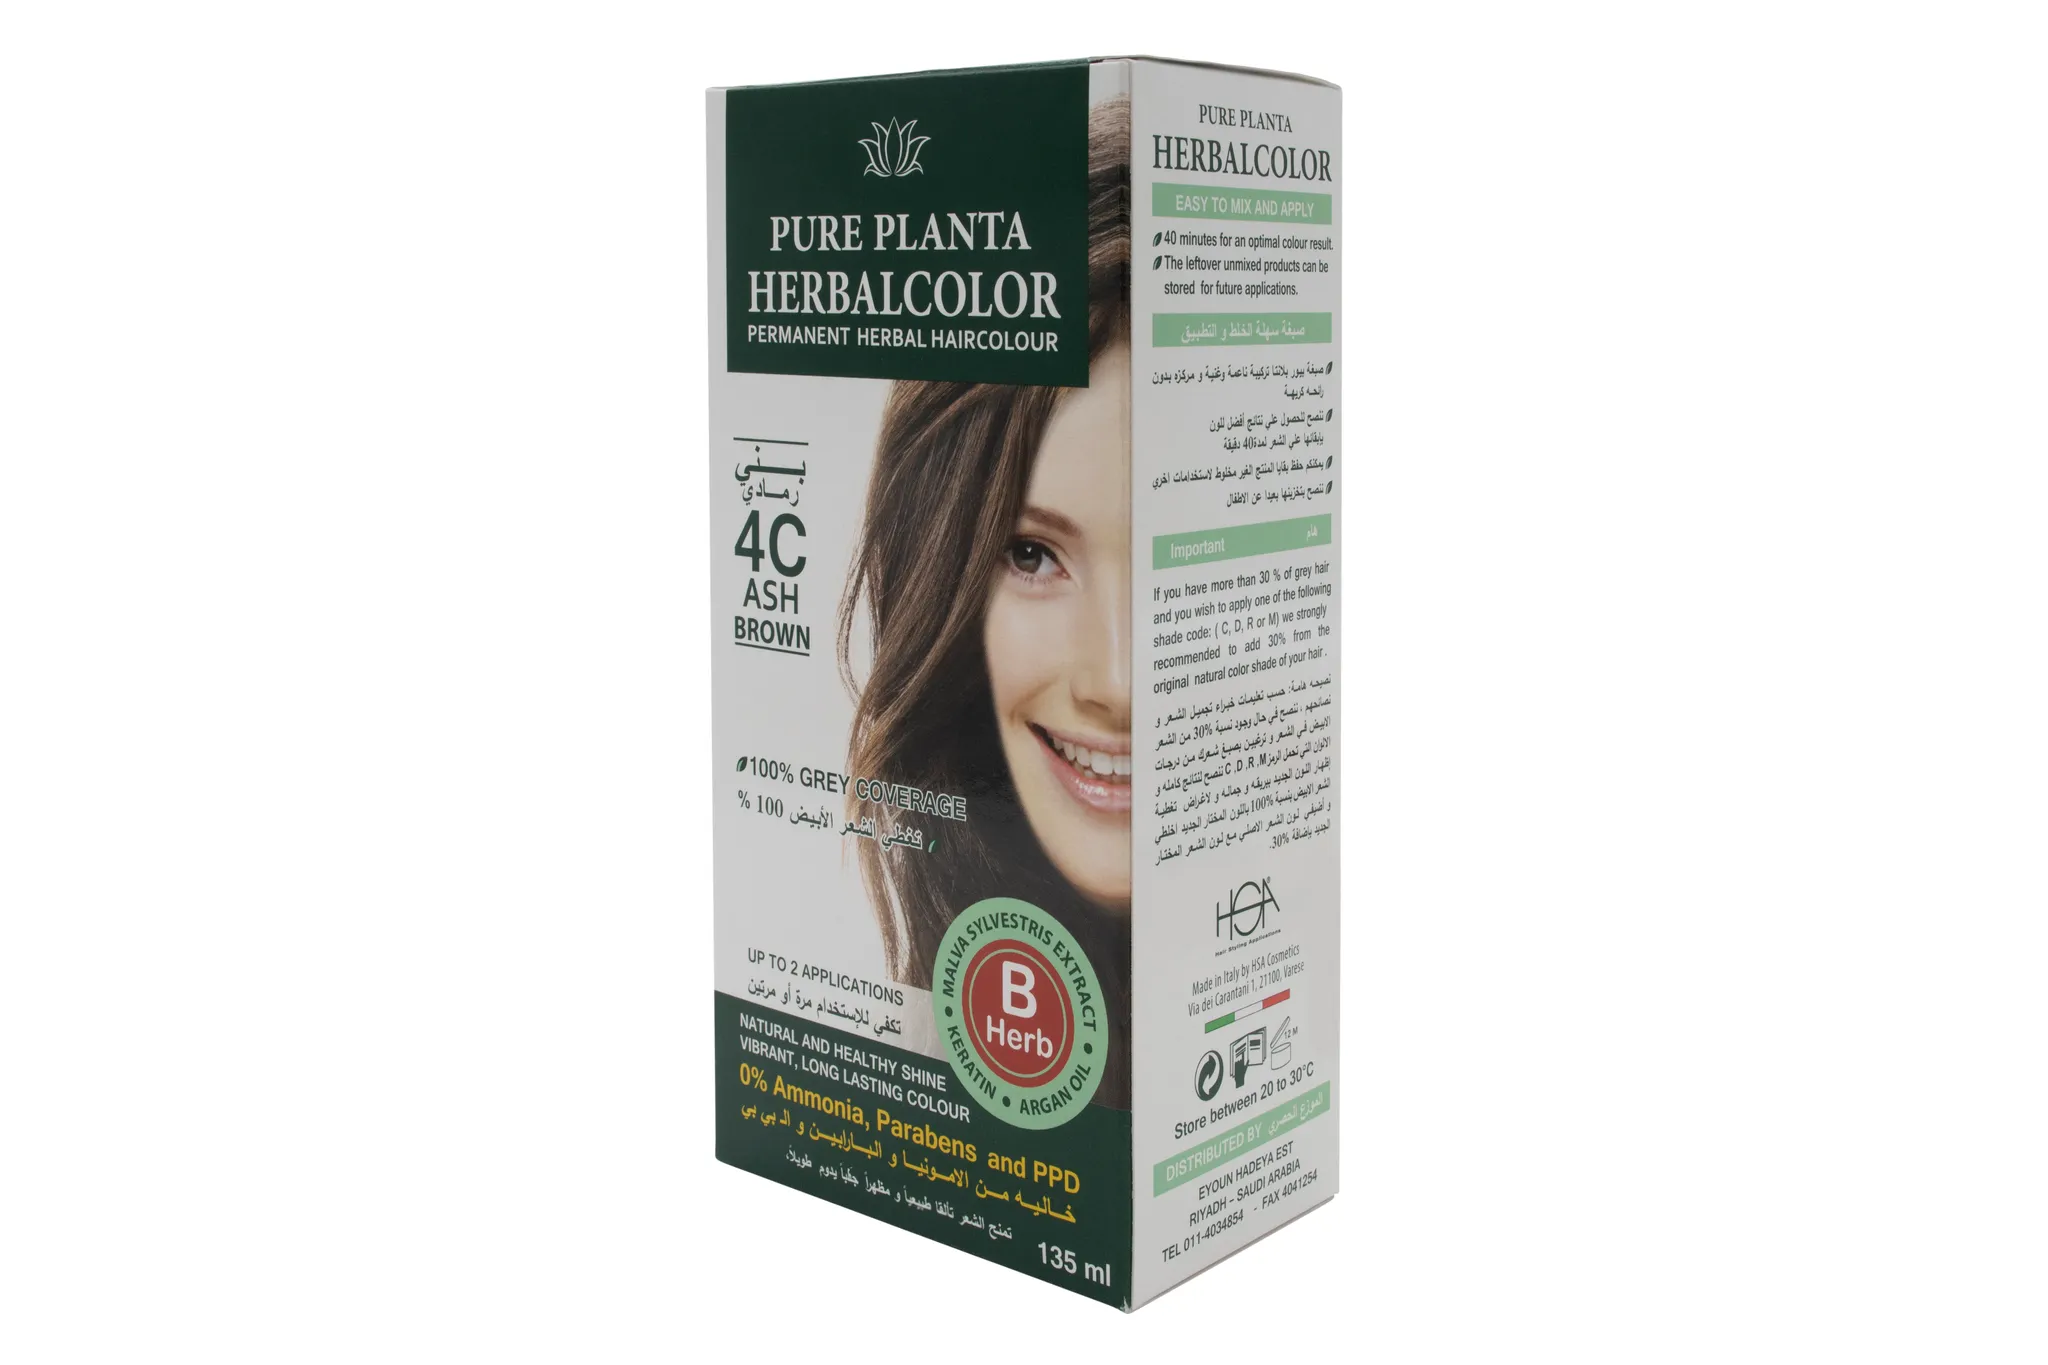 Herbal Hair Color Gel 4C Ash Chestnut